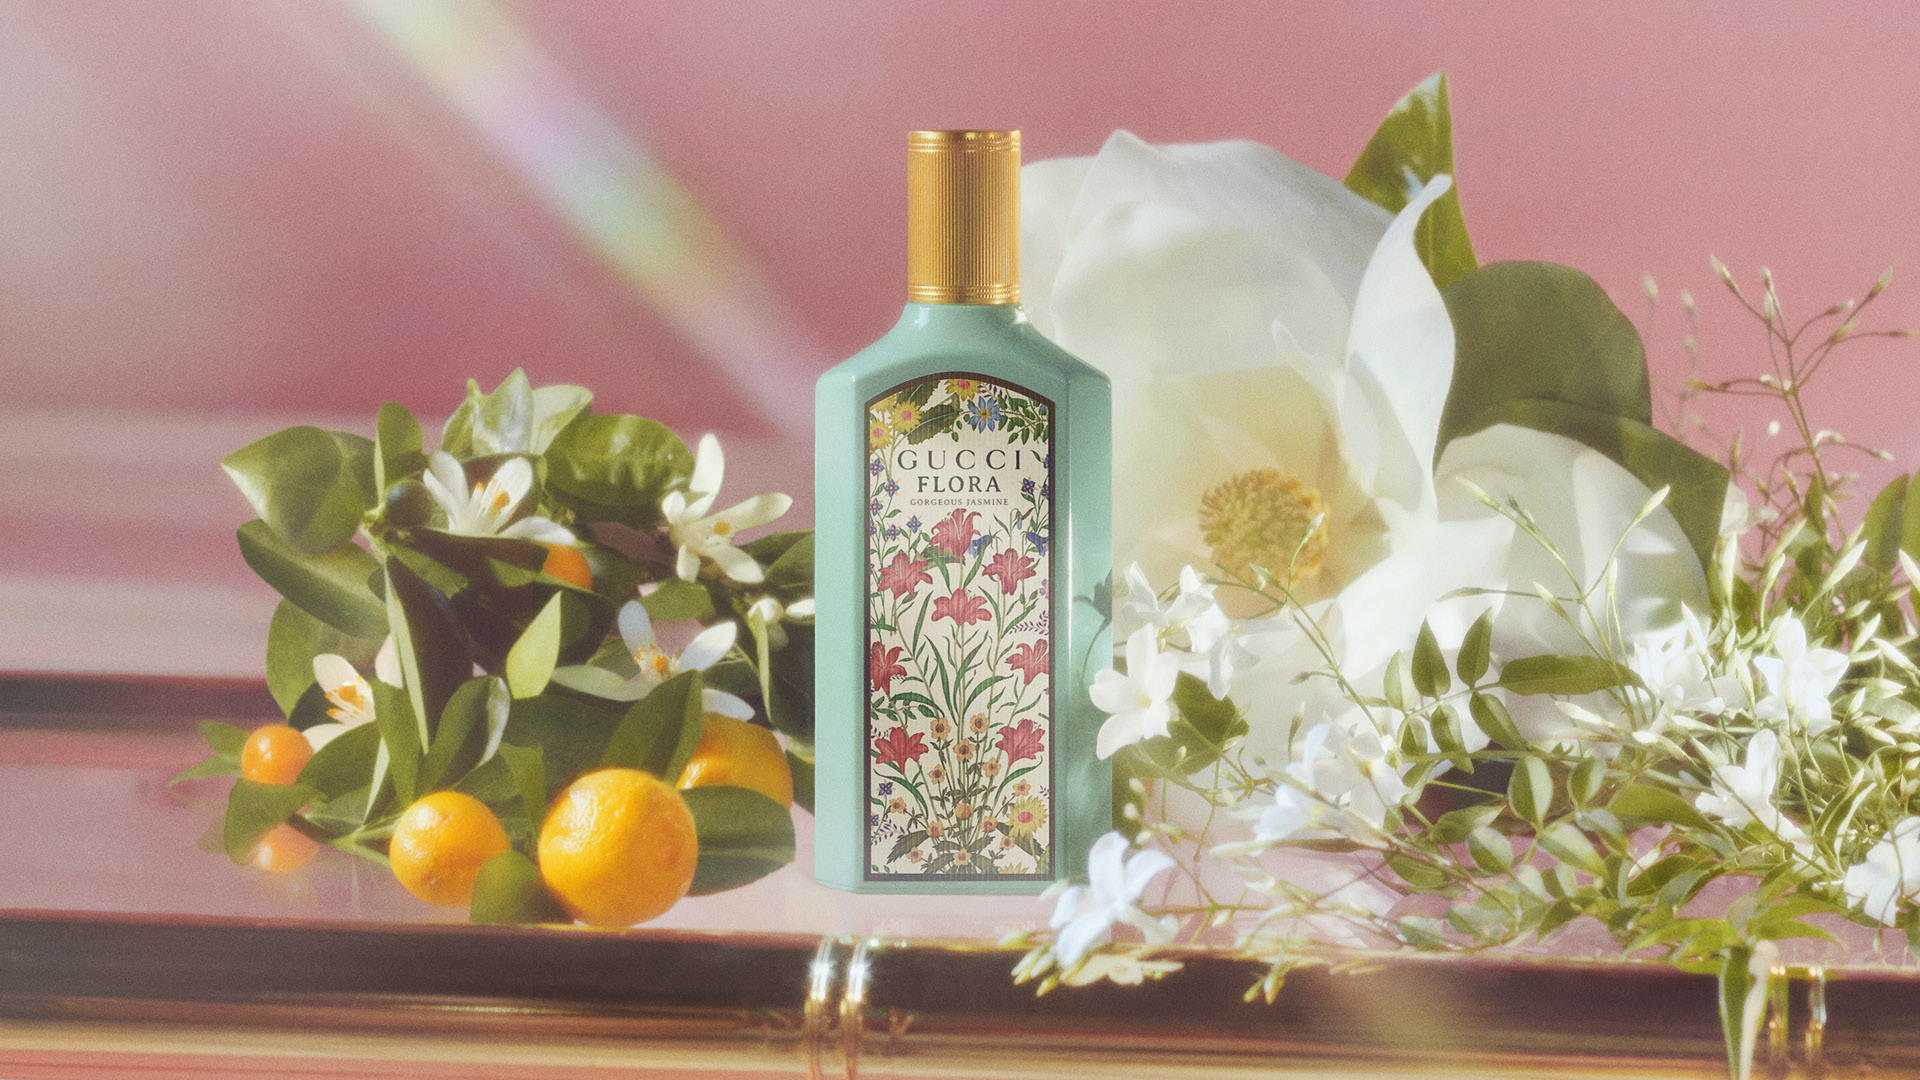 Miris krasi kraljevski grandiflorum jasmin čiji se nežni buketi transformišu u srce i duh novog Gucci Flora Gorgeous Jasmine parfema.